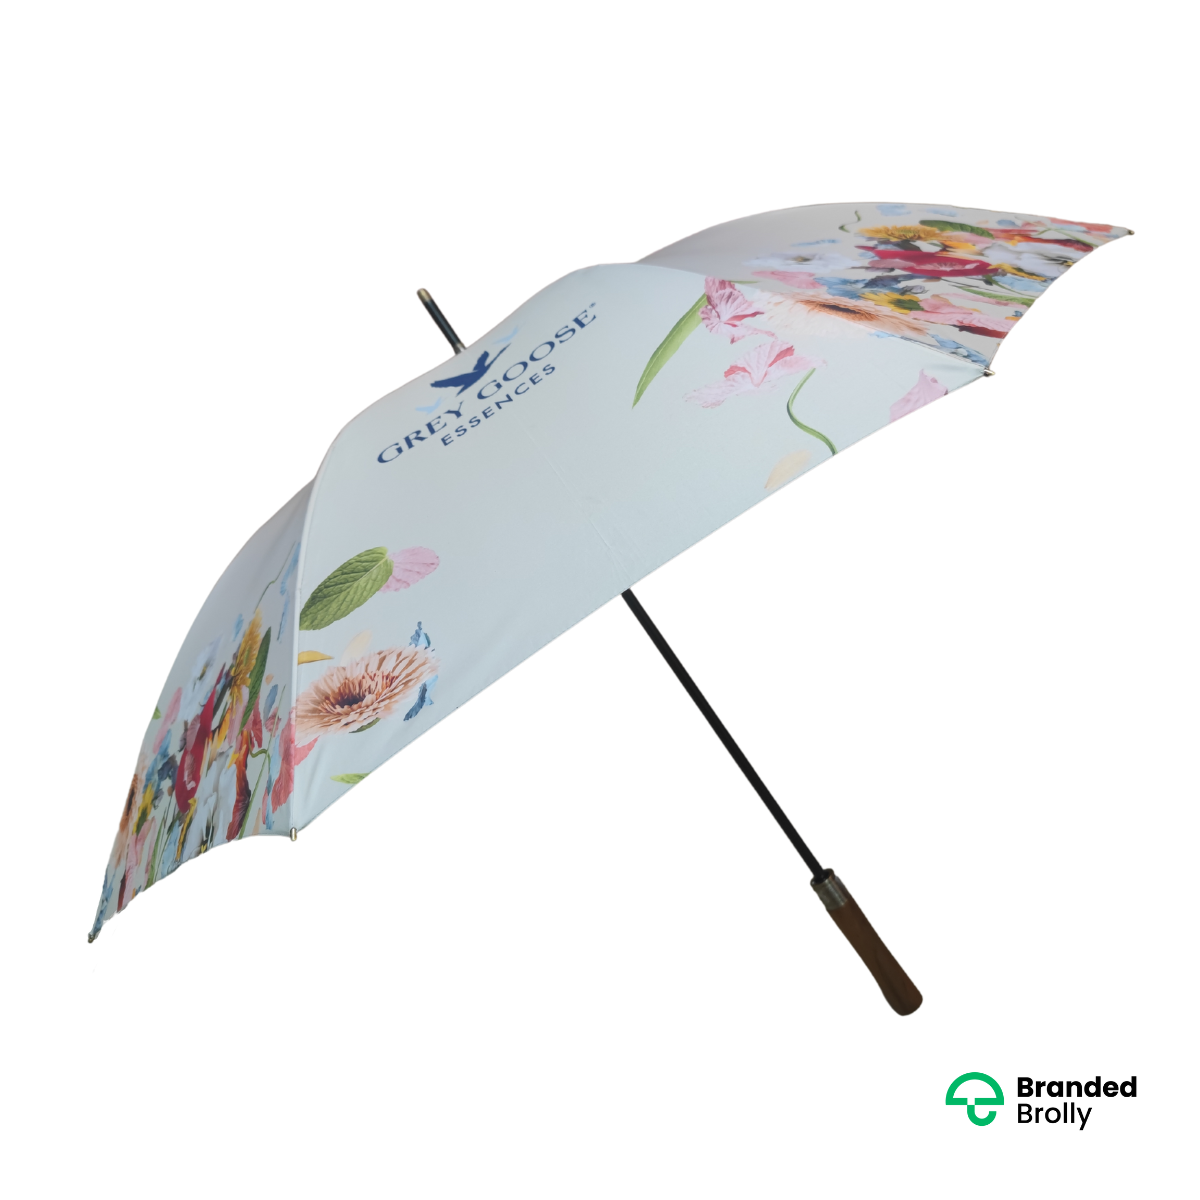 Grey Goose Essences Branded Umbrellas